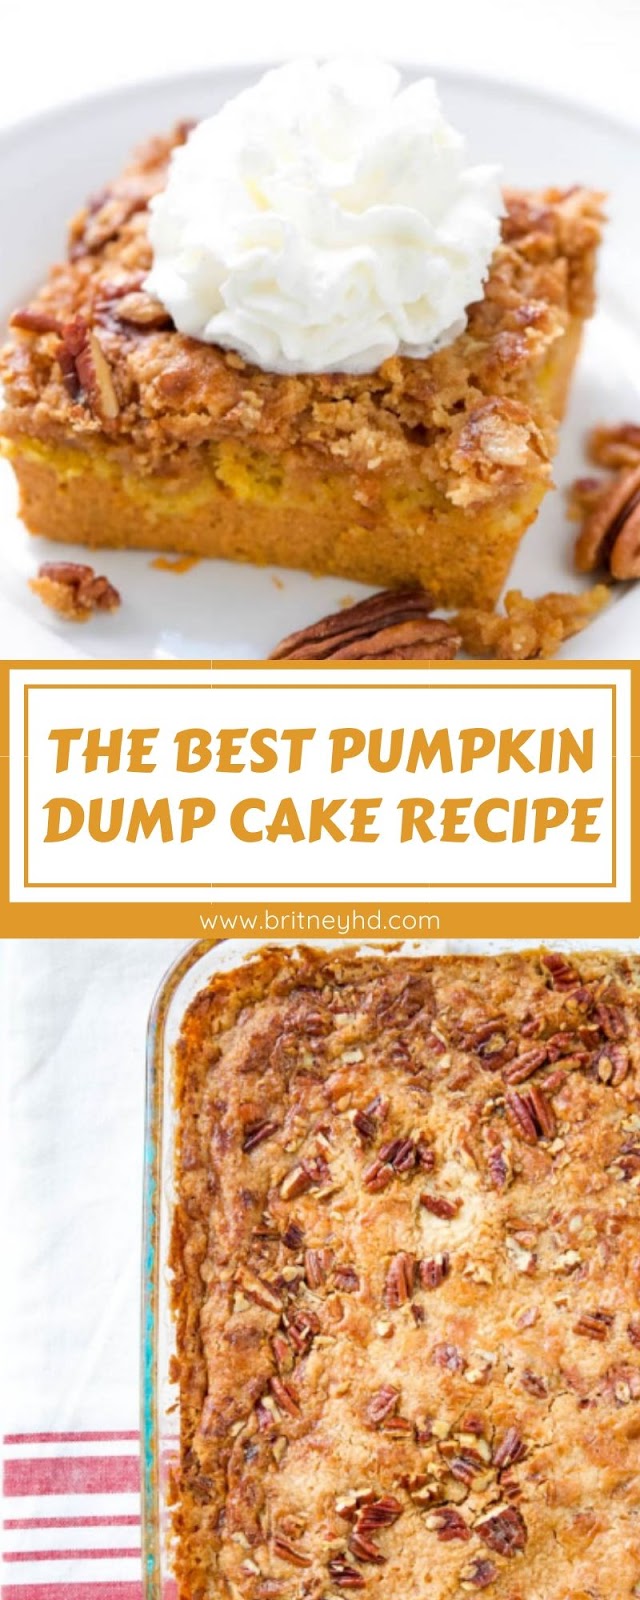 THE BEST PUMPKIN DUMP CAKE RECIPE